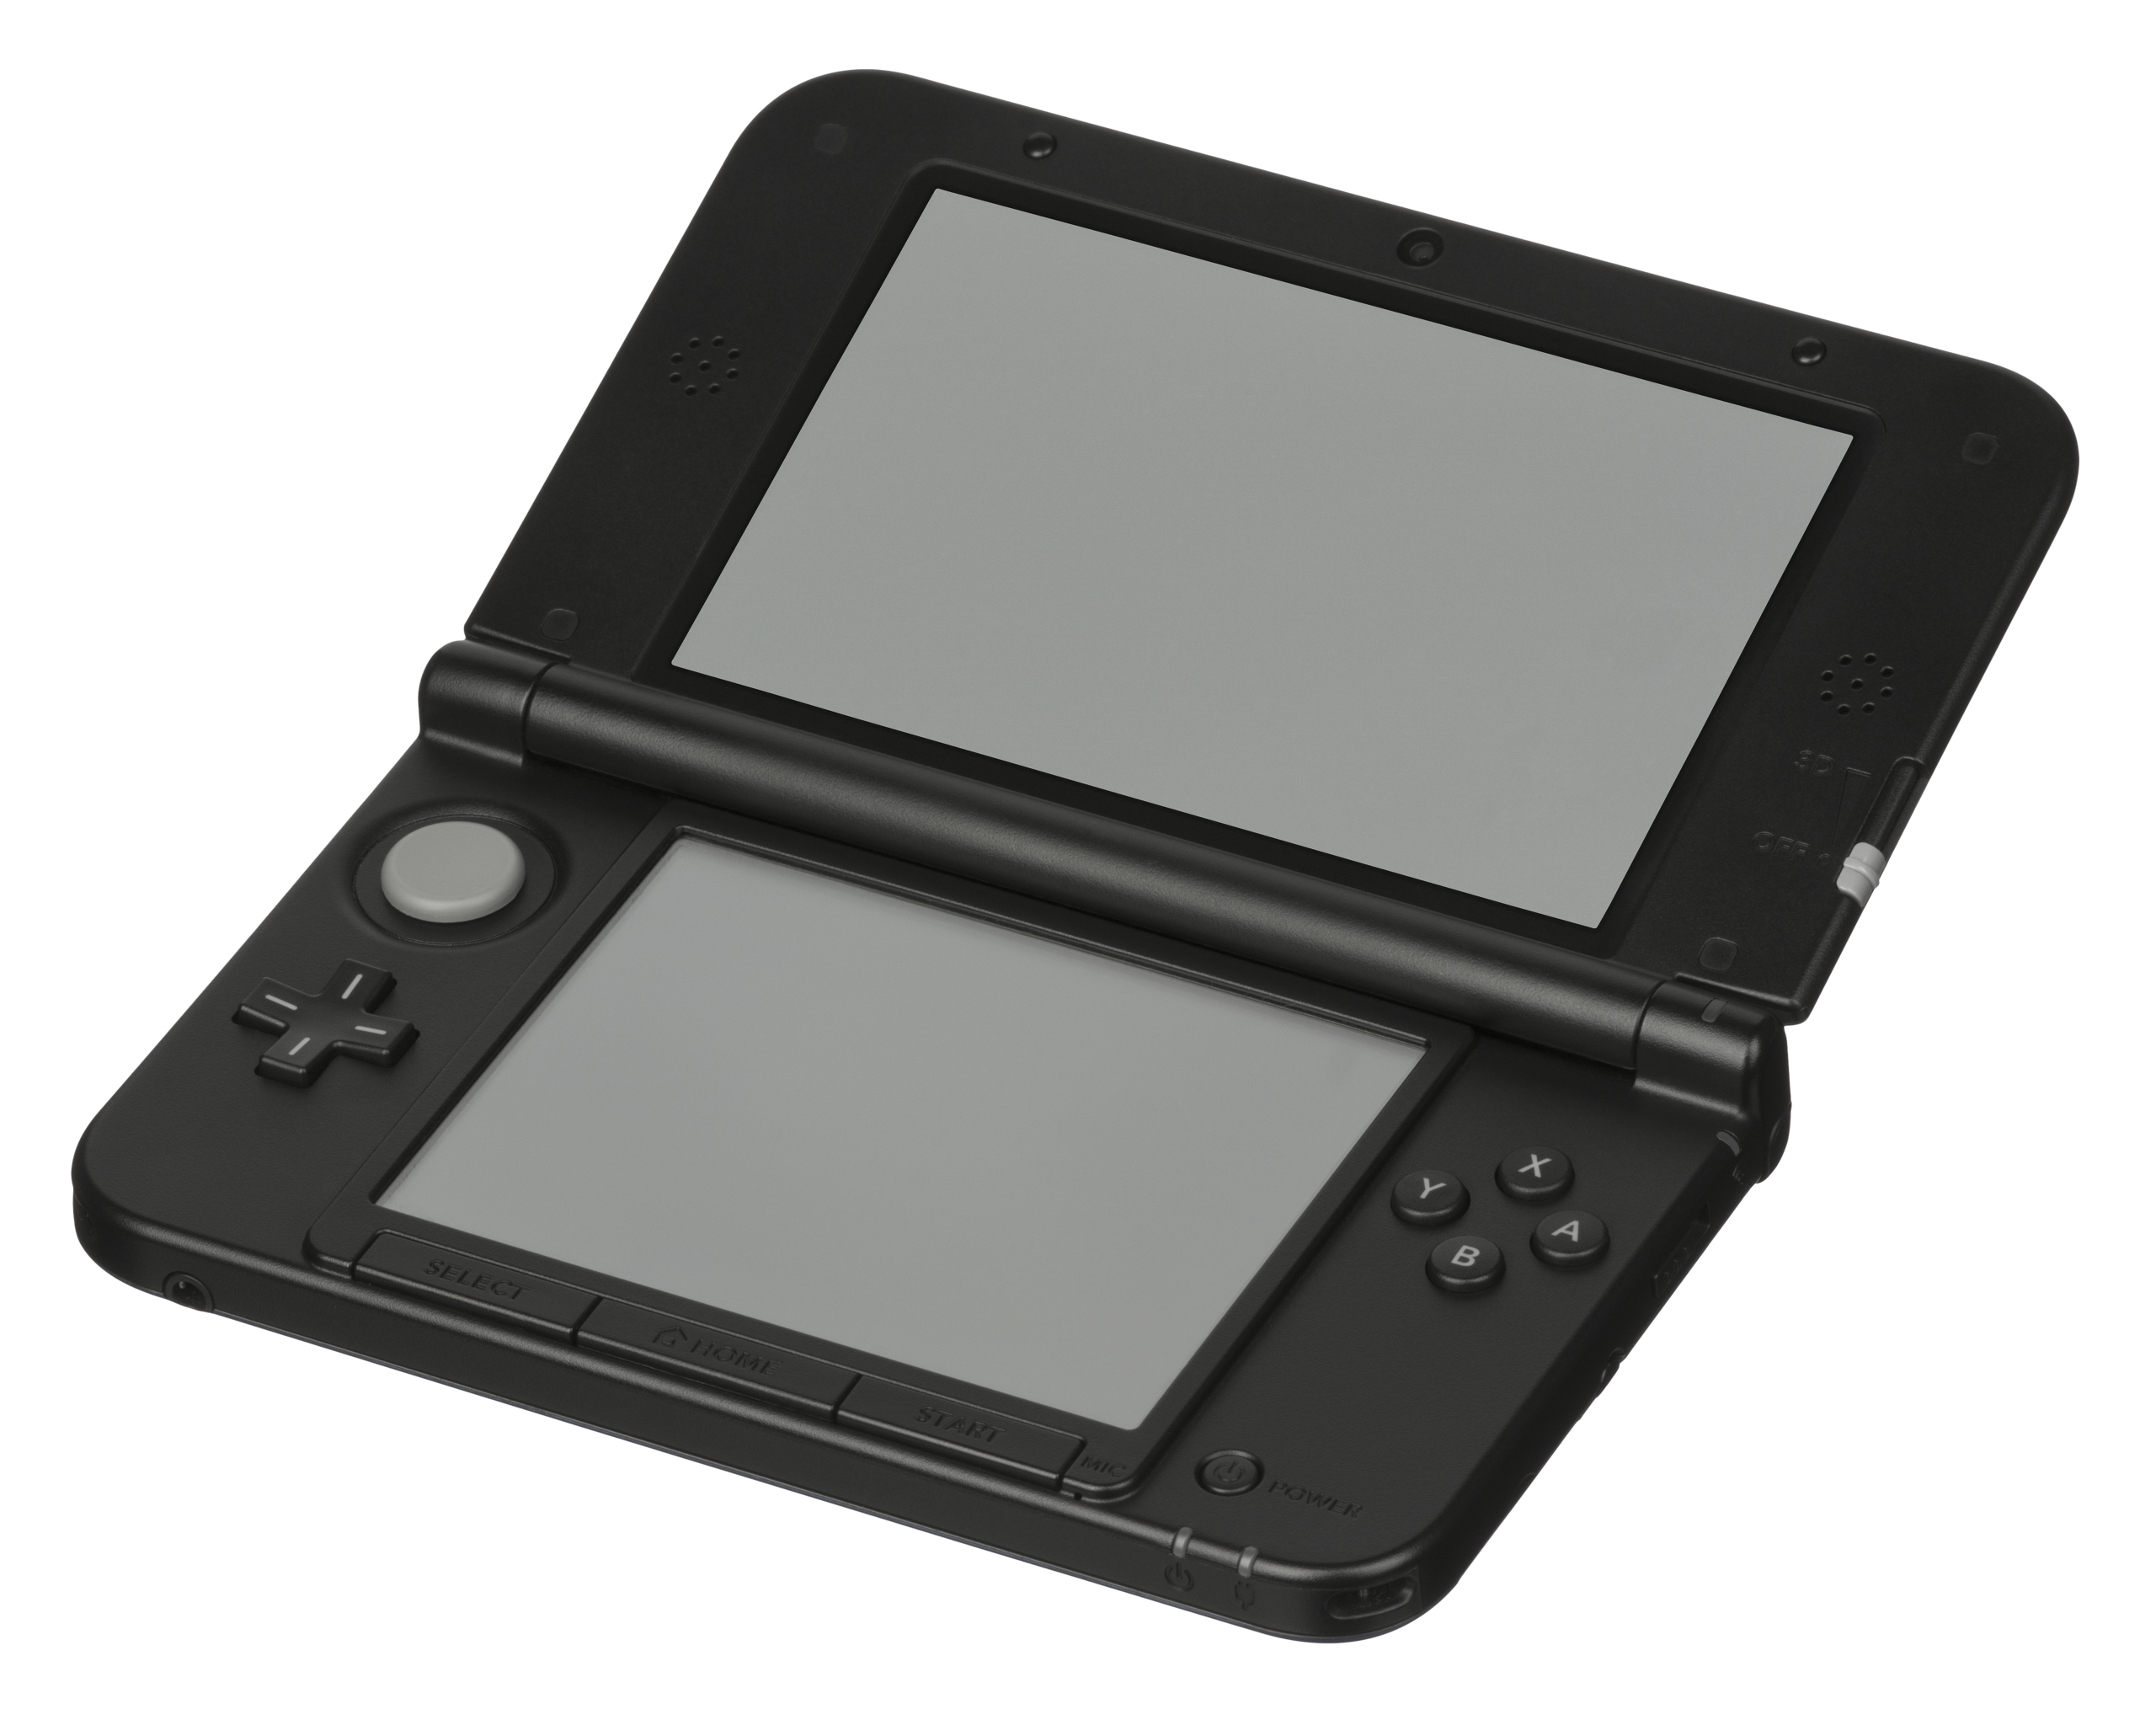 ファイル:Nintendo-3DS-XL-angled.png - Wikipedia